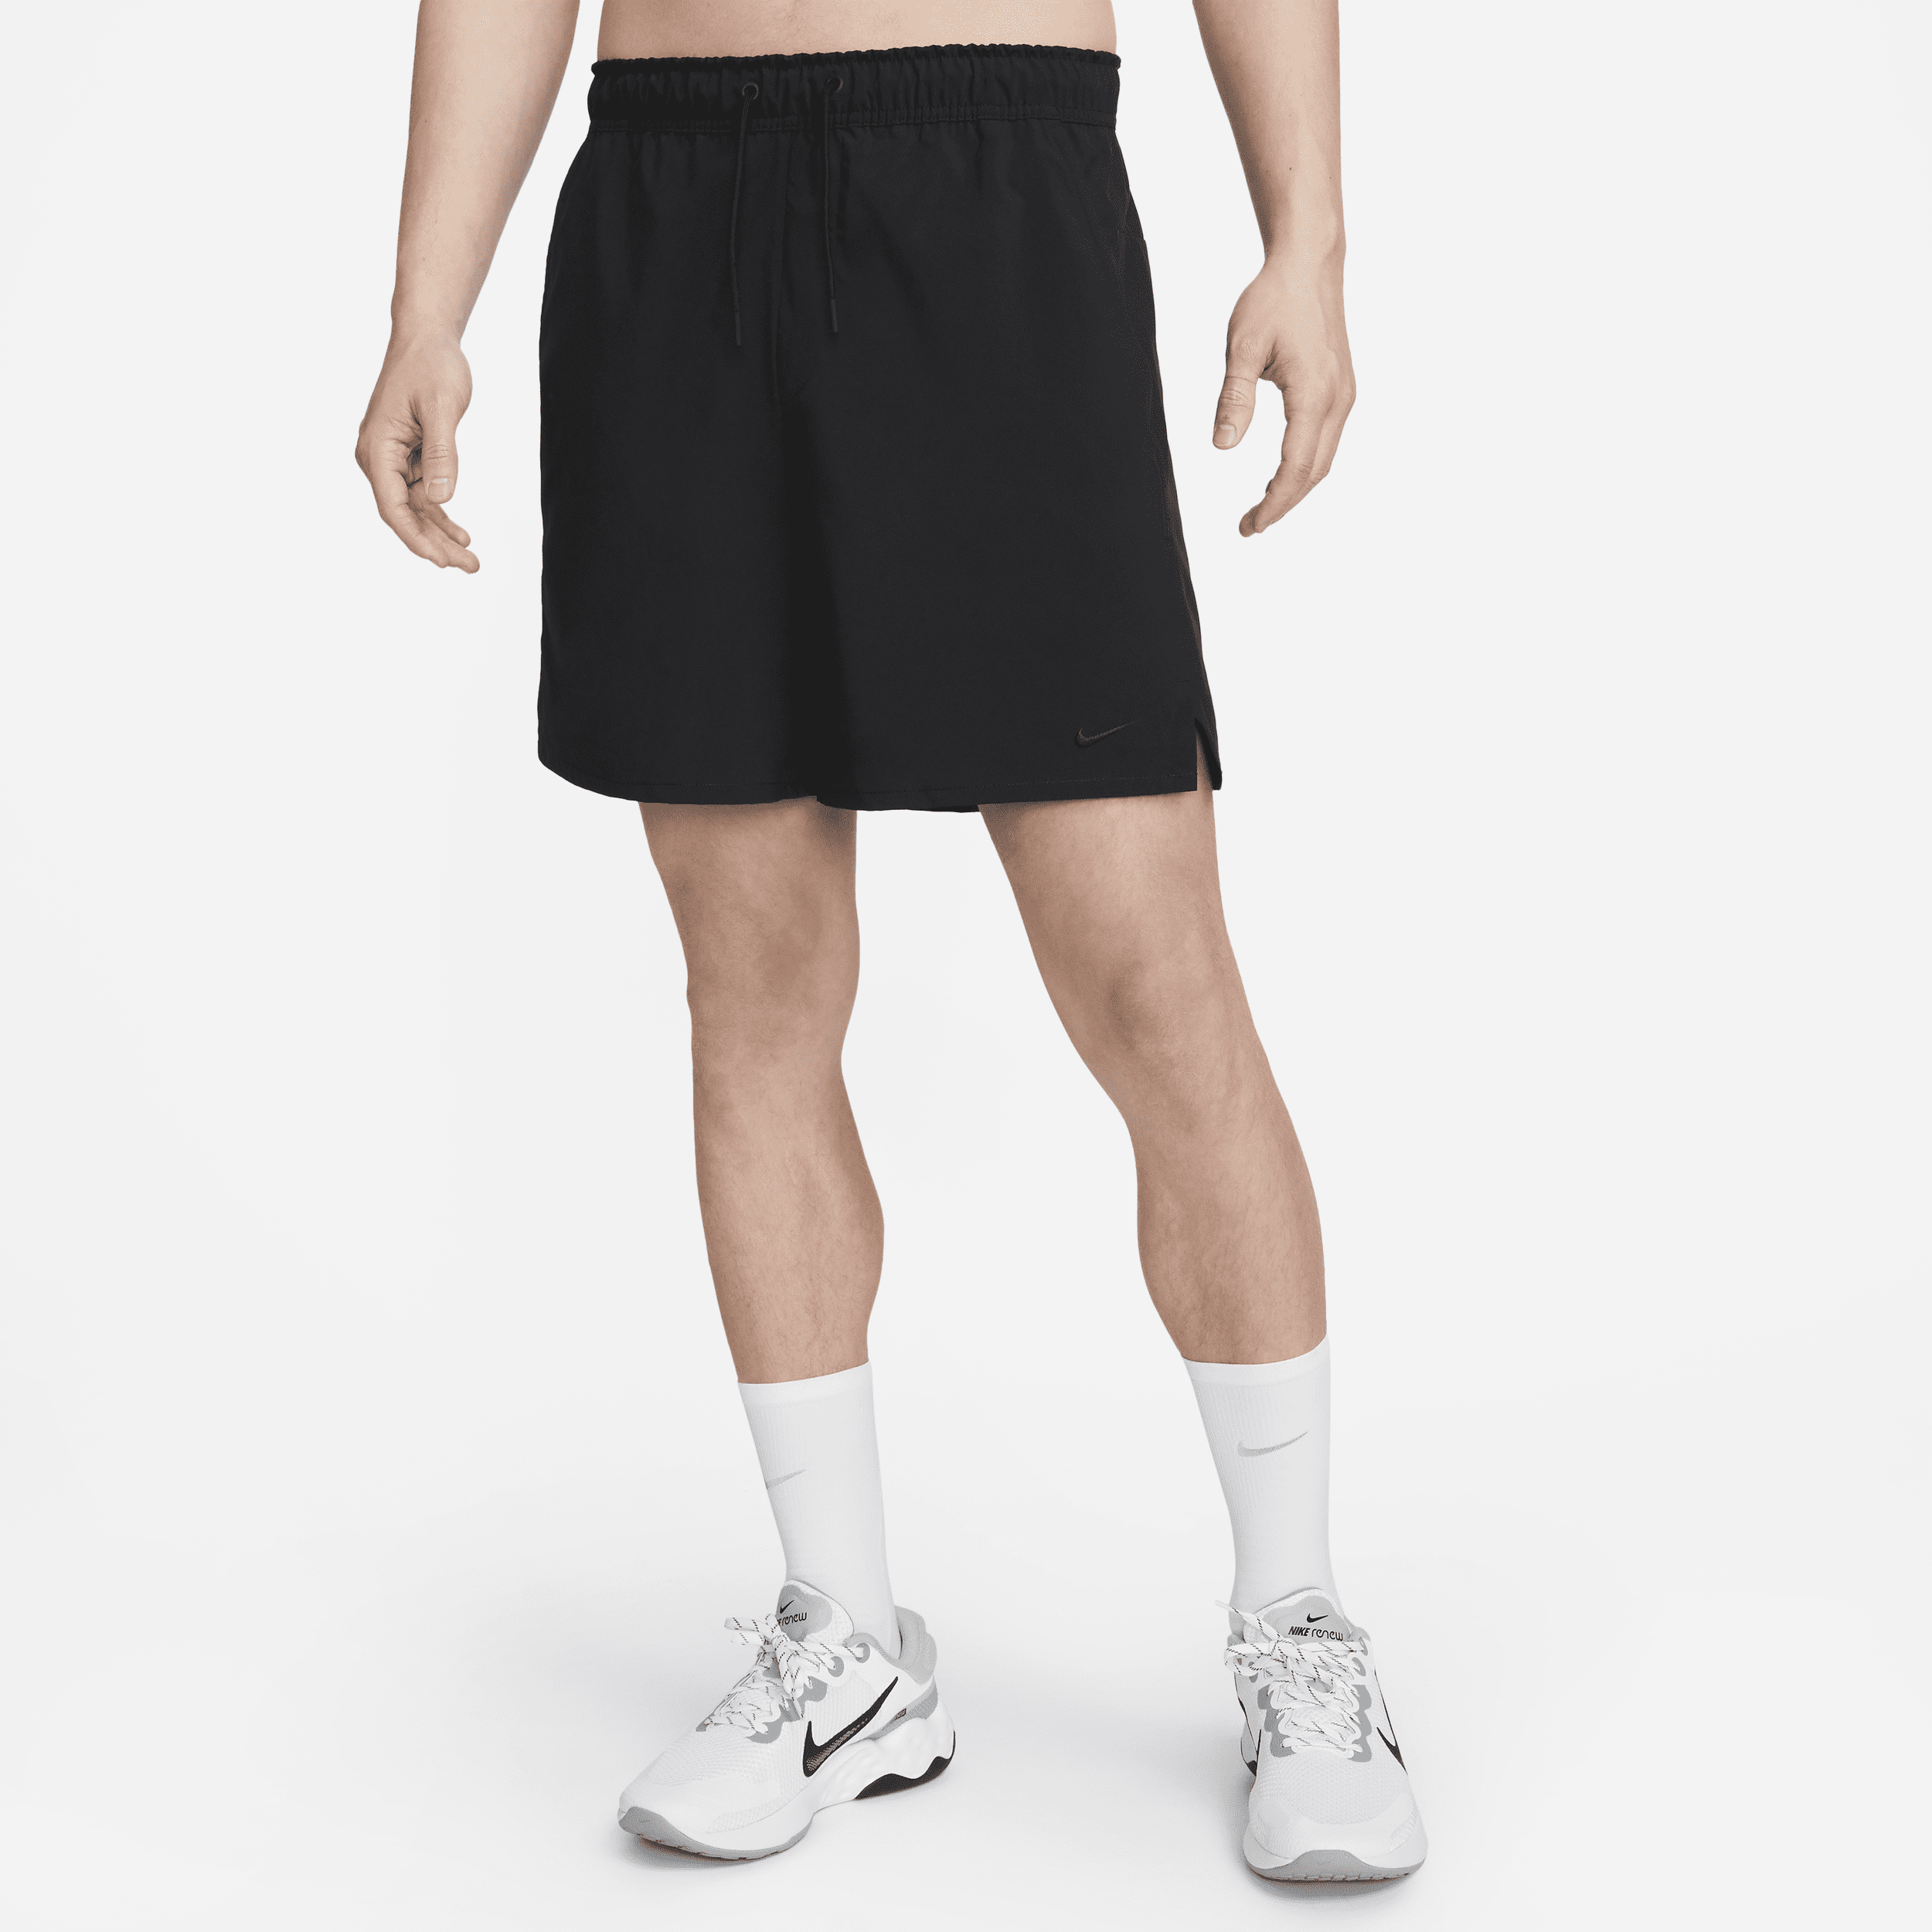 Shorts versatili Dri-FIT non foderati 18 cm Nike Unlimited – Uomo - Nero